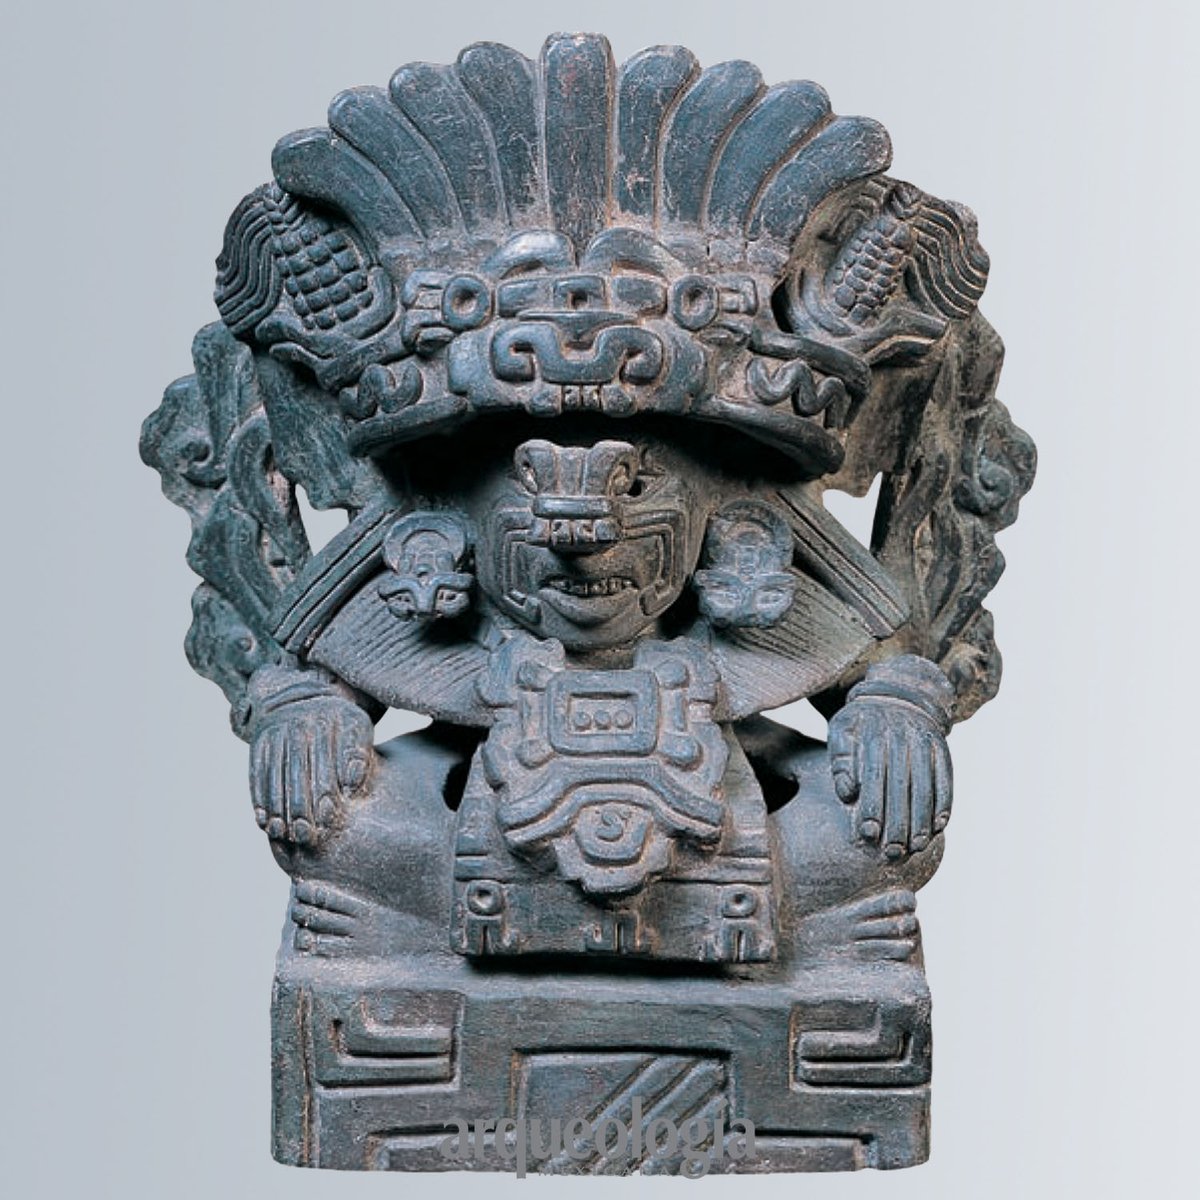 Cocijo,dios zapoteco de la lluvia y el rayo, en ocasiones llevaba anteojeras circulares, máscara bucal de serpiente y el glifo C en su tocado. En esta urna de los Valles Centrales de Oaxaca, el dios tiene mazorcas junto a las plumas del tocado y nubes en la banda del mismo.